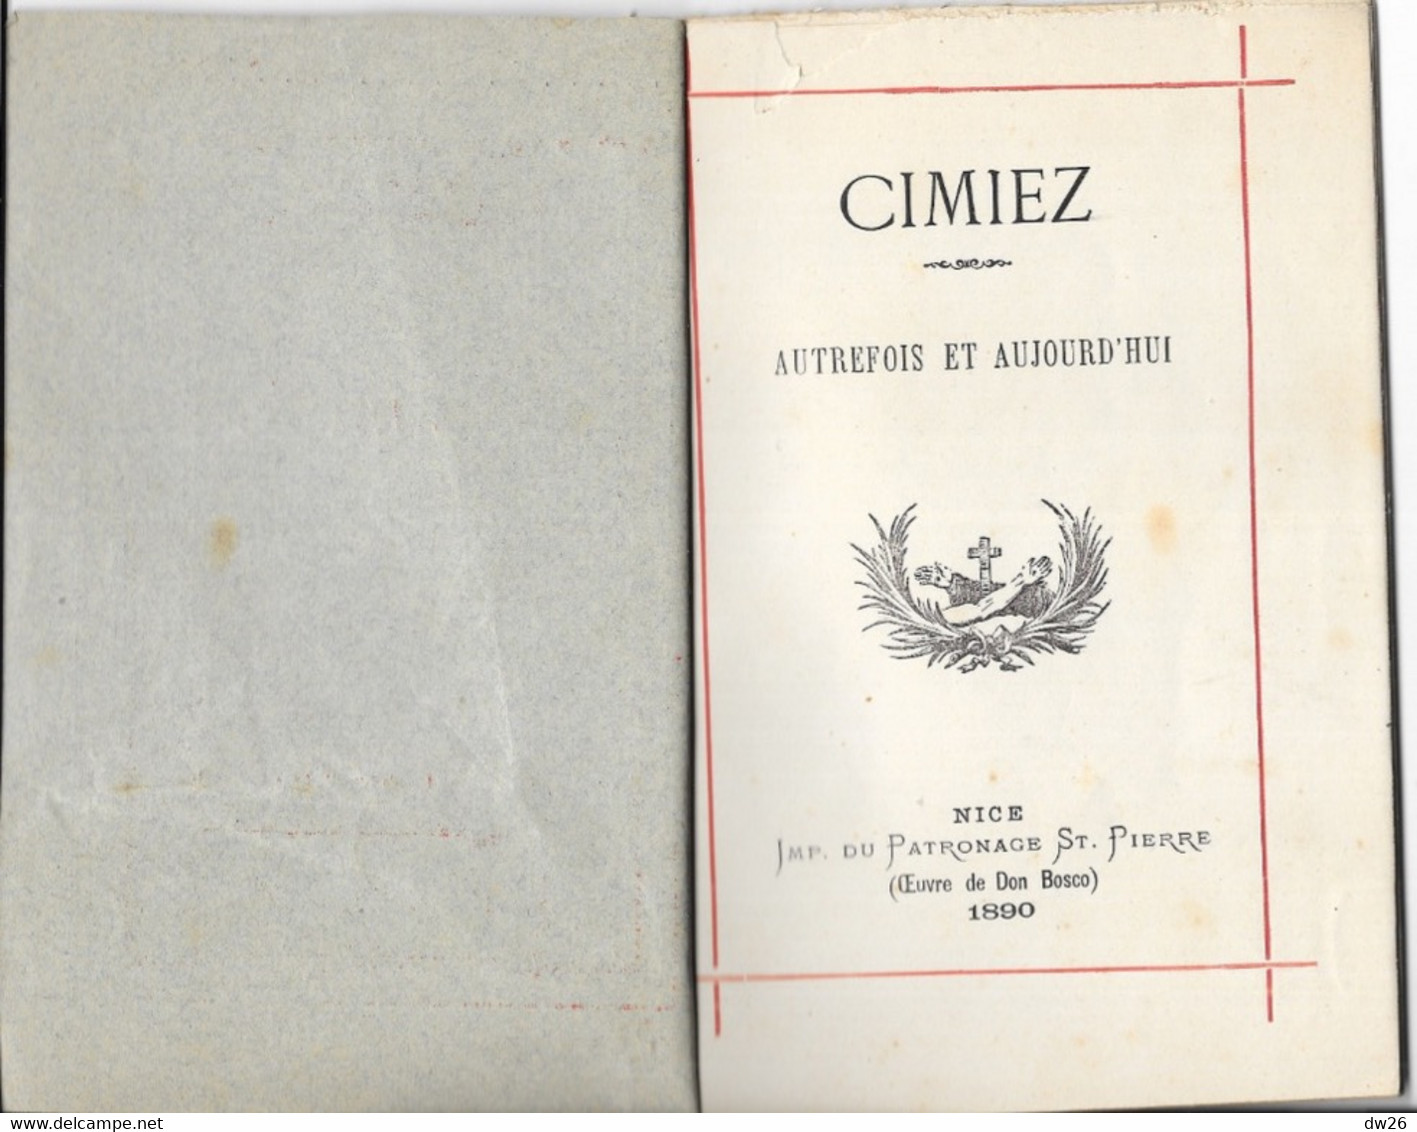 Livret Sur Le Monastère à Nice: Cimiez Autrefois Et Aujourd'hui - Impression Du Patronage St Pierre 1890 - Religion